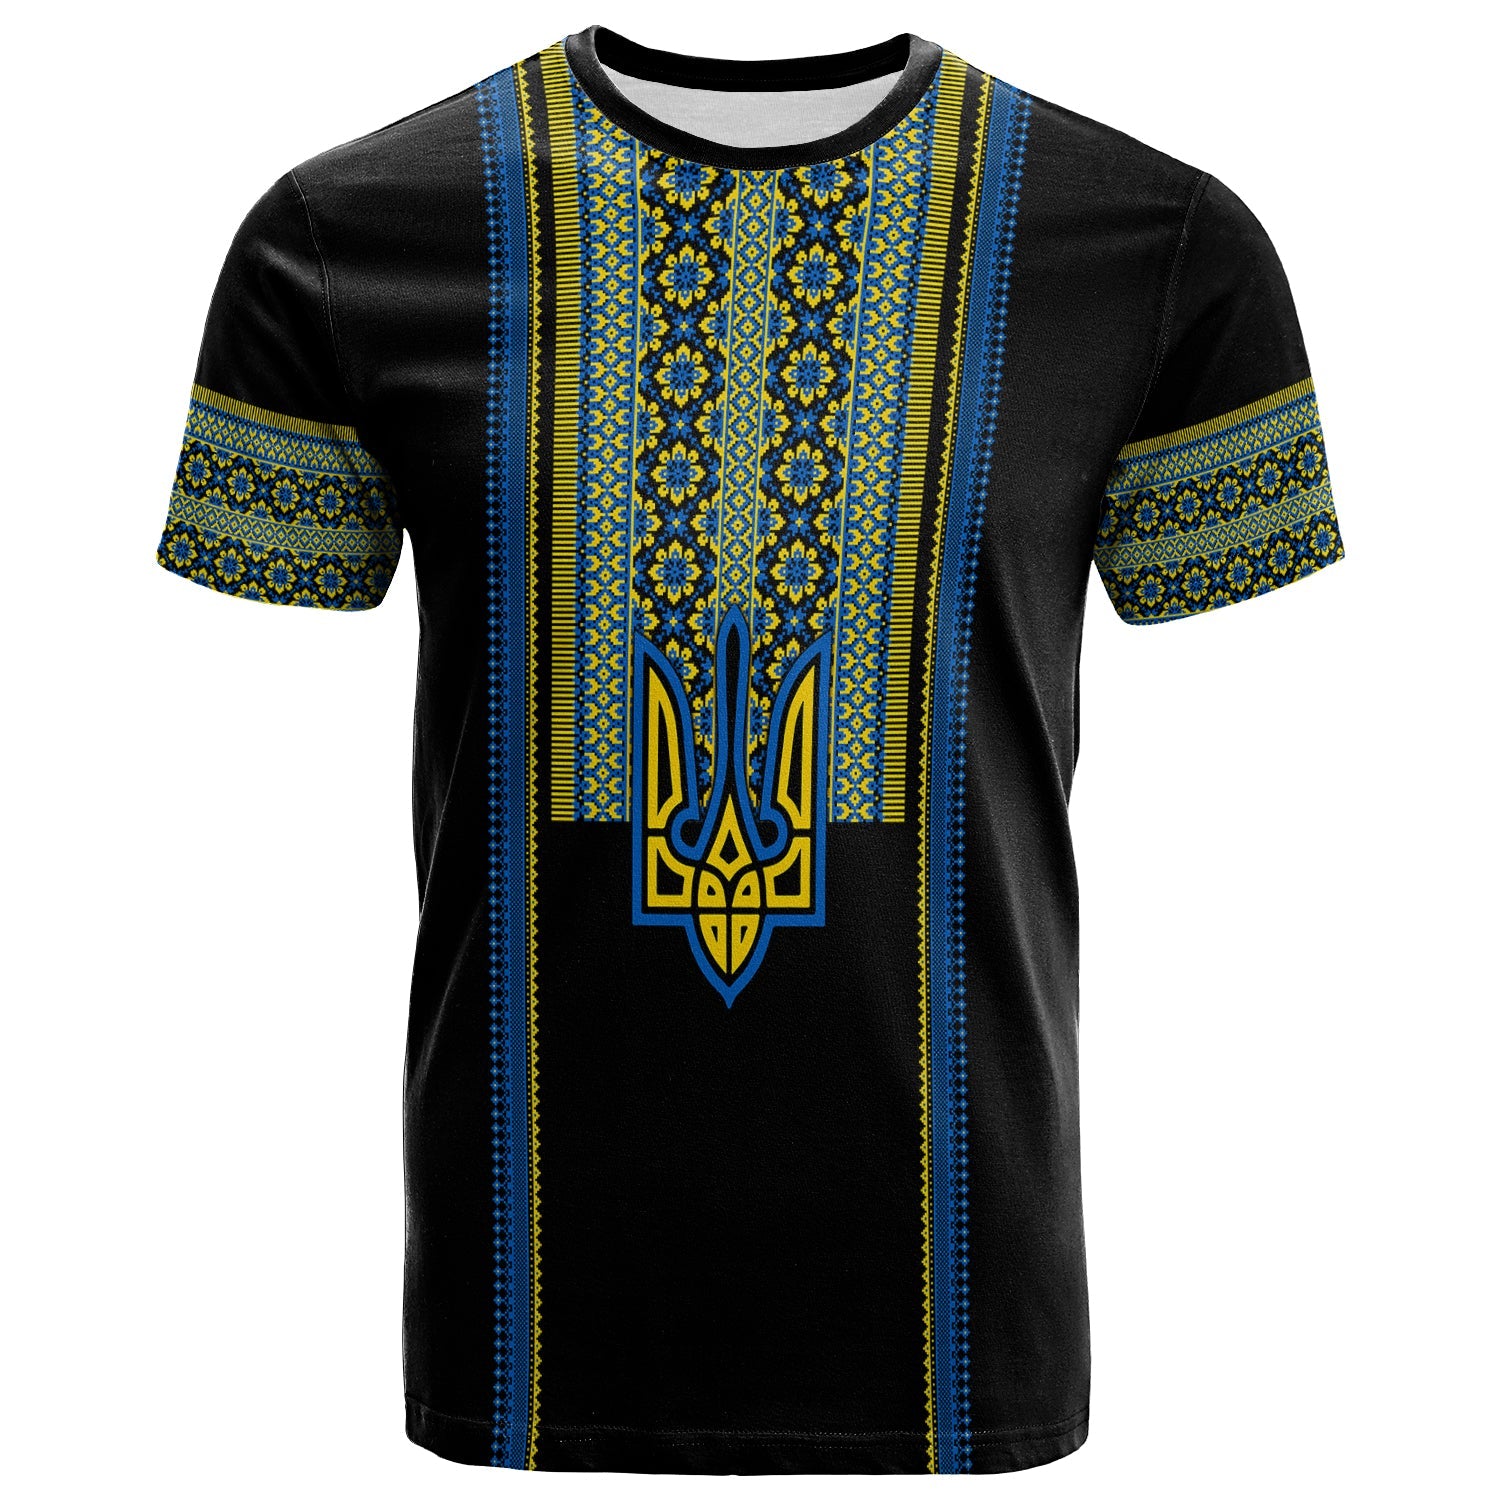 ukraine-vyshyvanka-t-shirt-unity-day